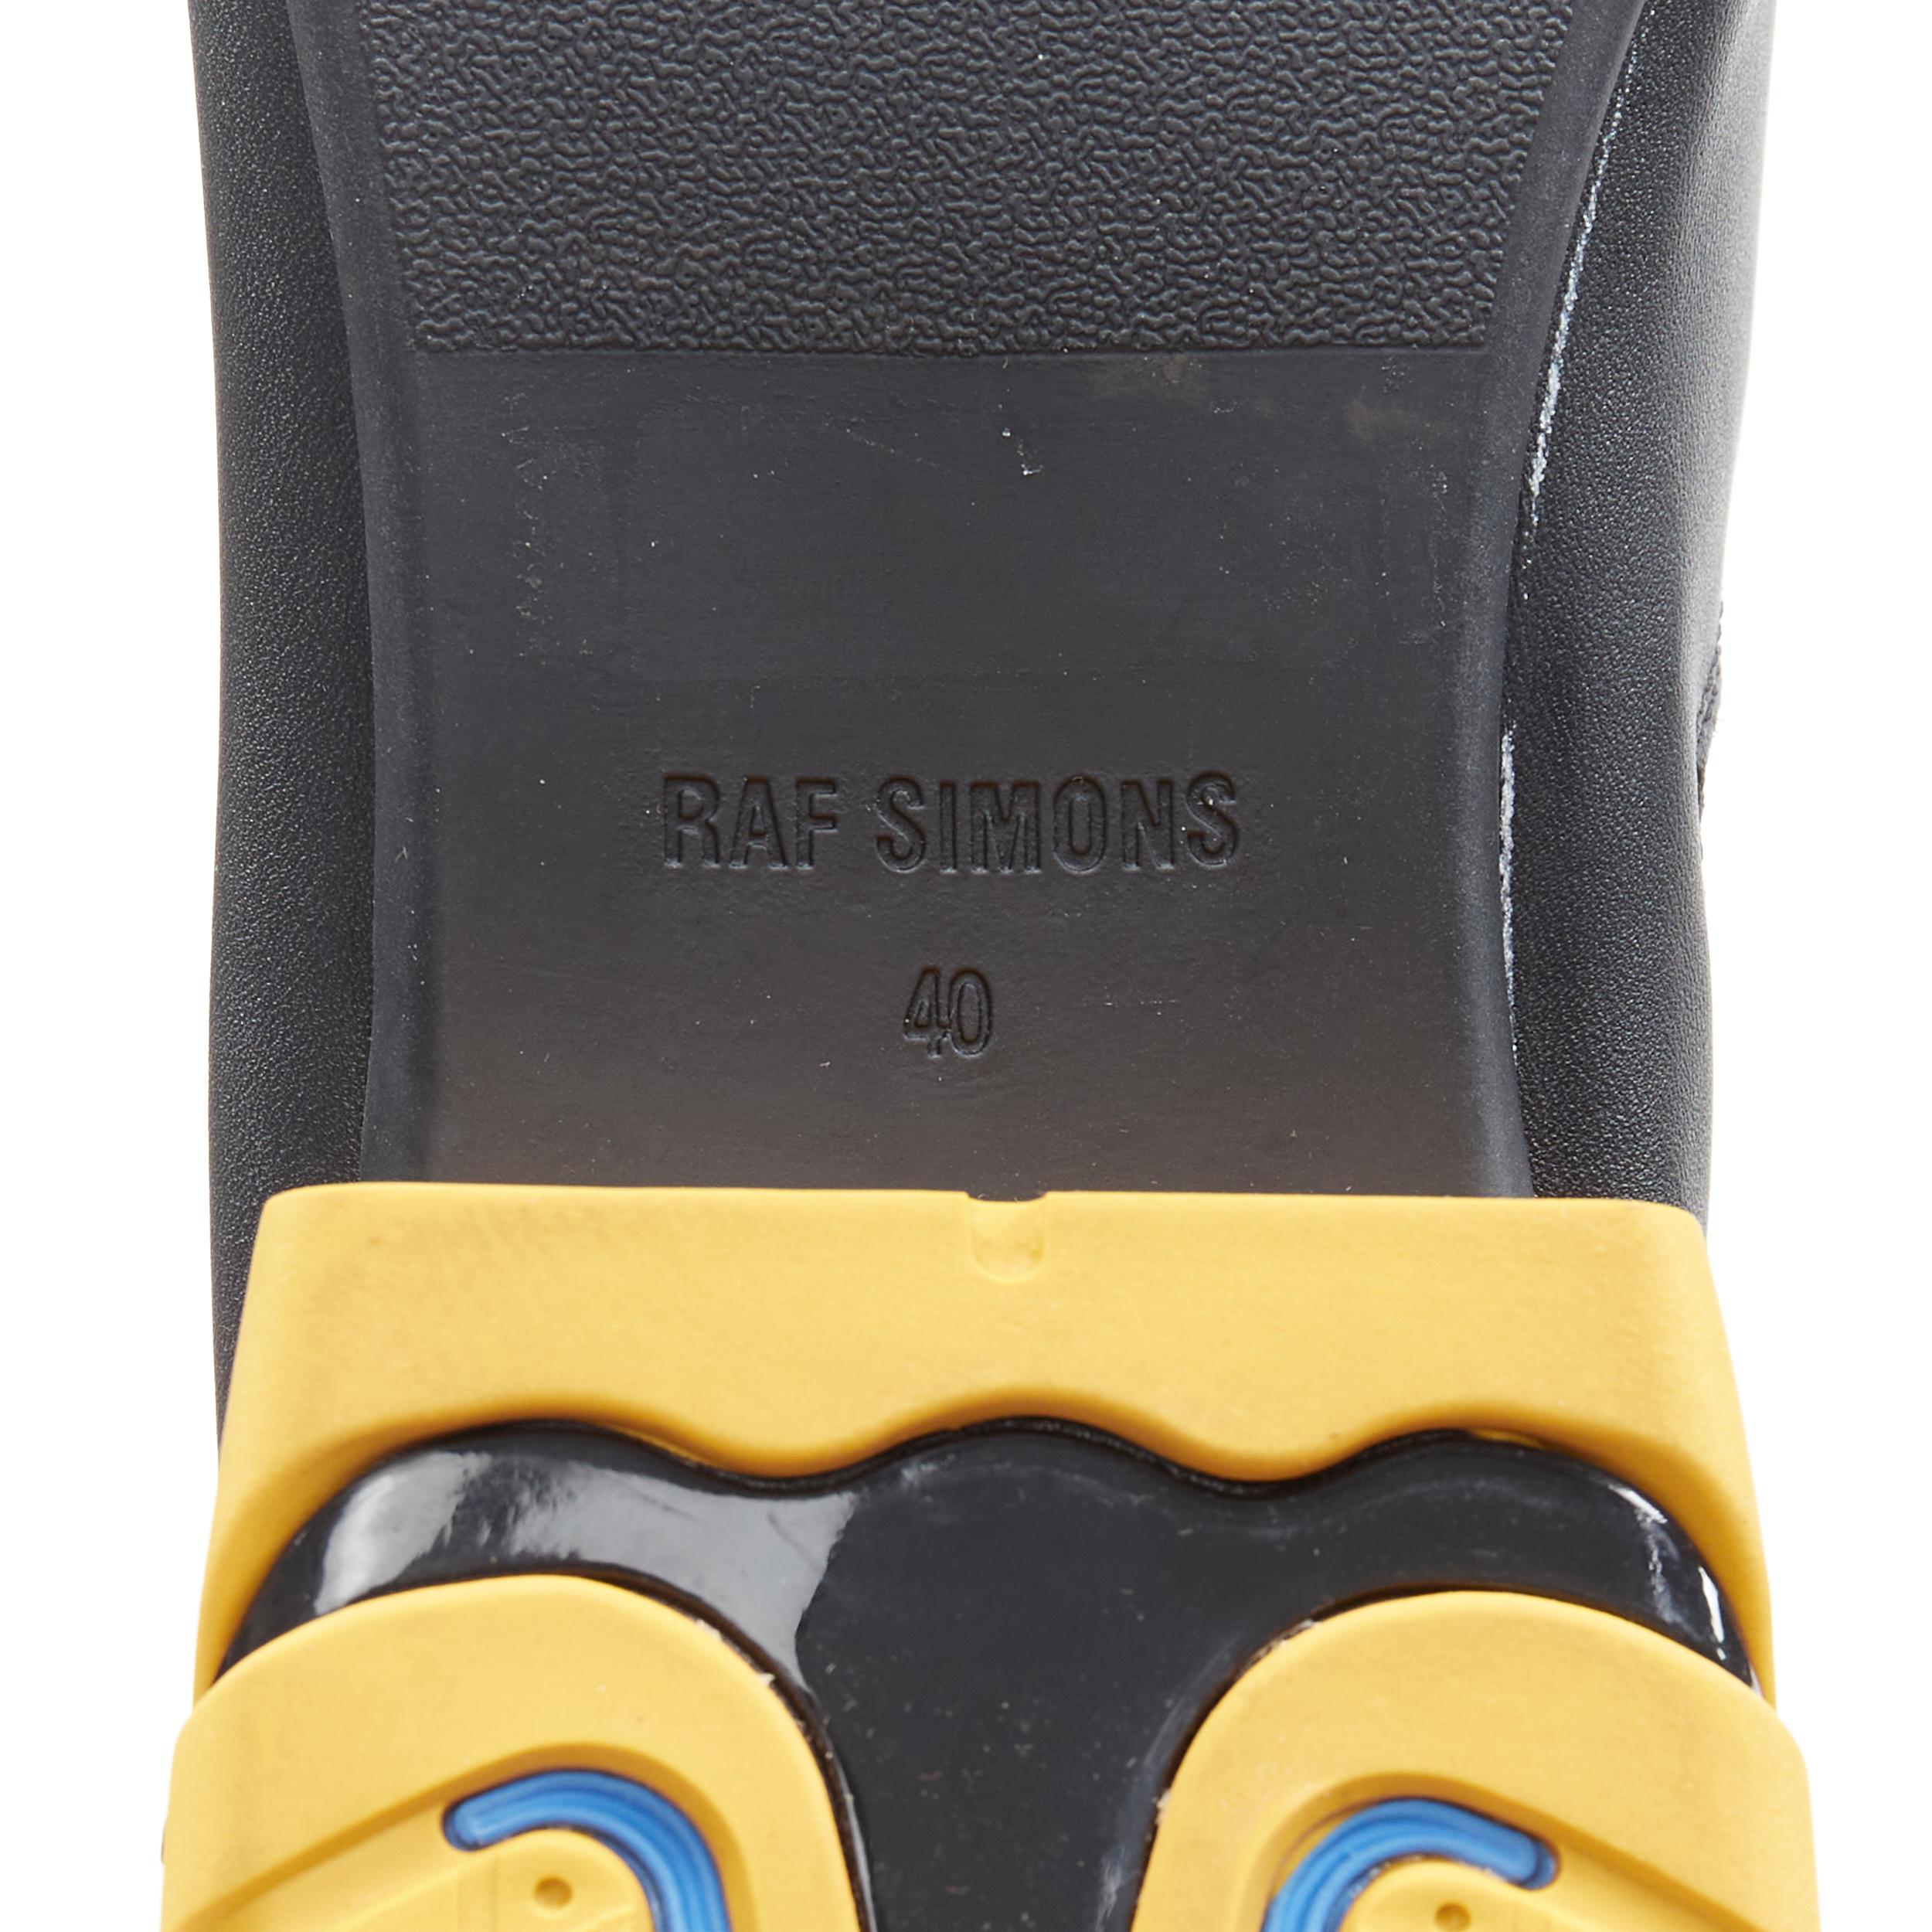 new RAF SIMONS Runner Solaris 21 runner sneaker block heel leather flats EU40 1